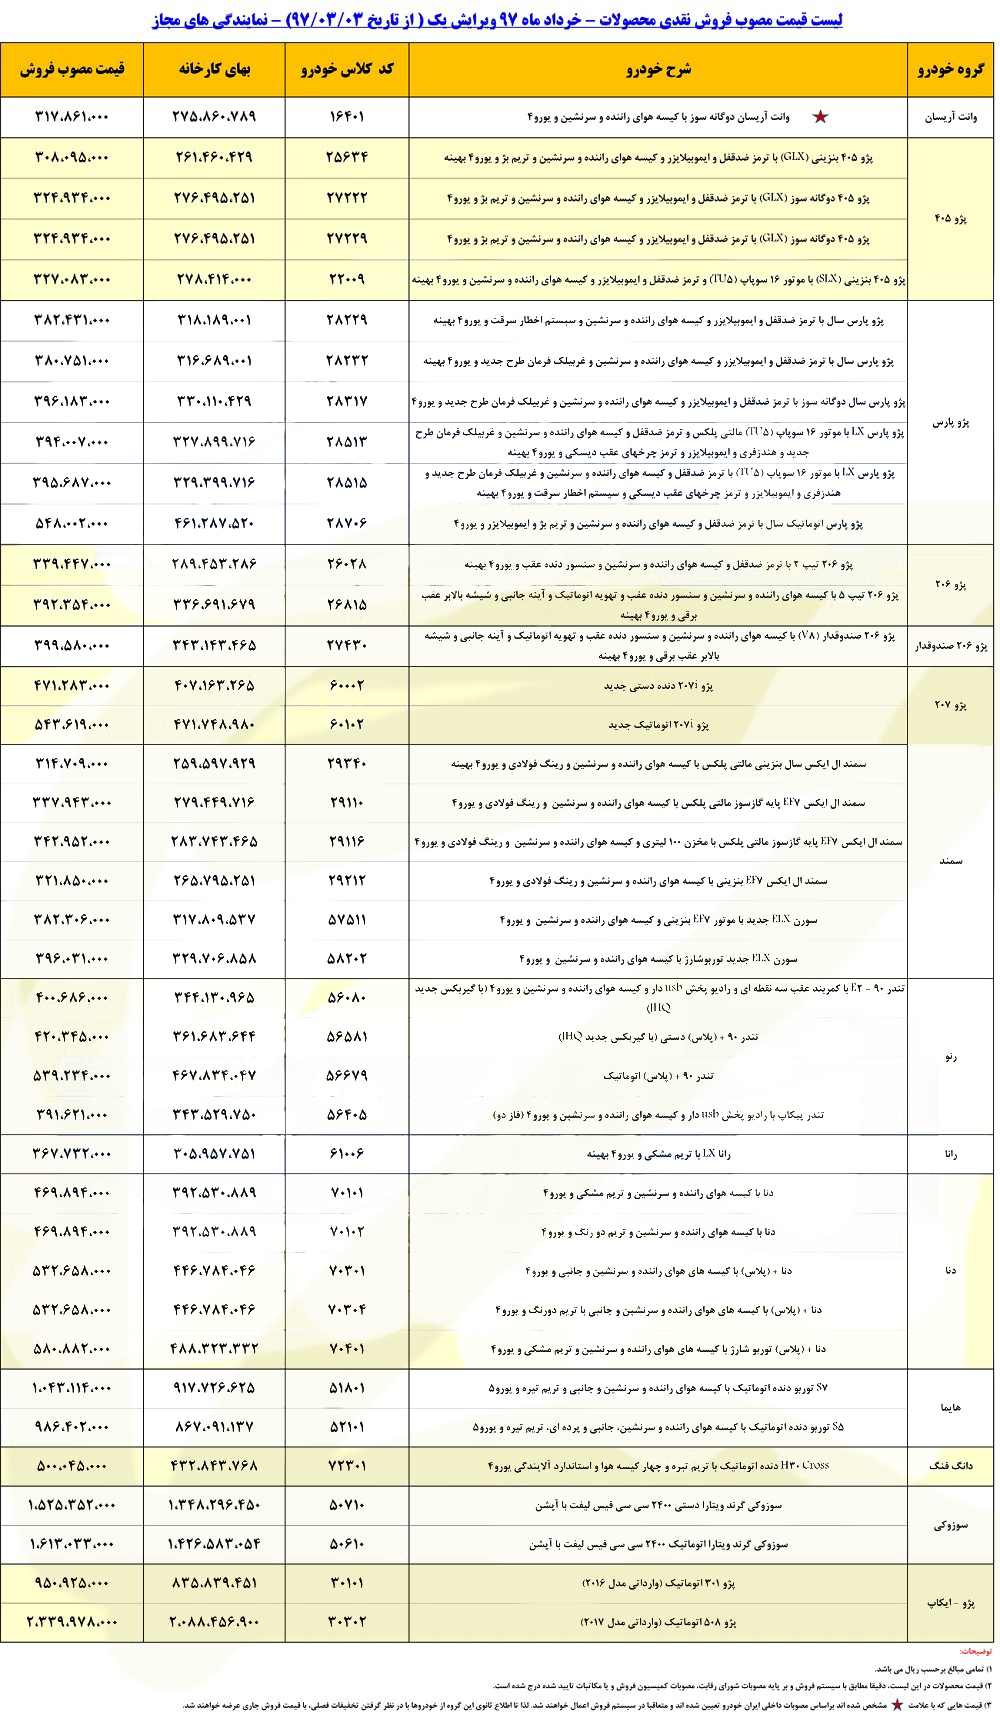 رنو کپچر از لیست محصولات ایران خودرو خط خورد - رنو کپچر از لیست محصولات ایران خودرو خط خورد